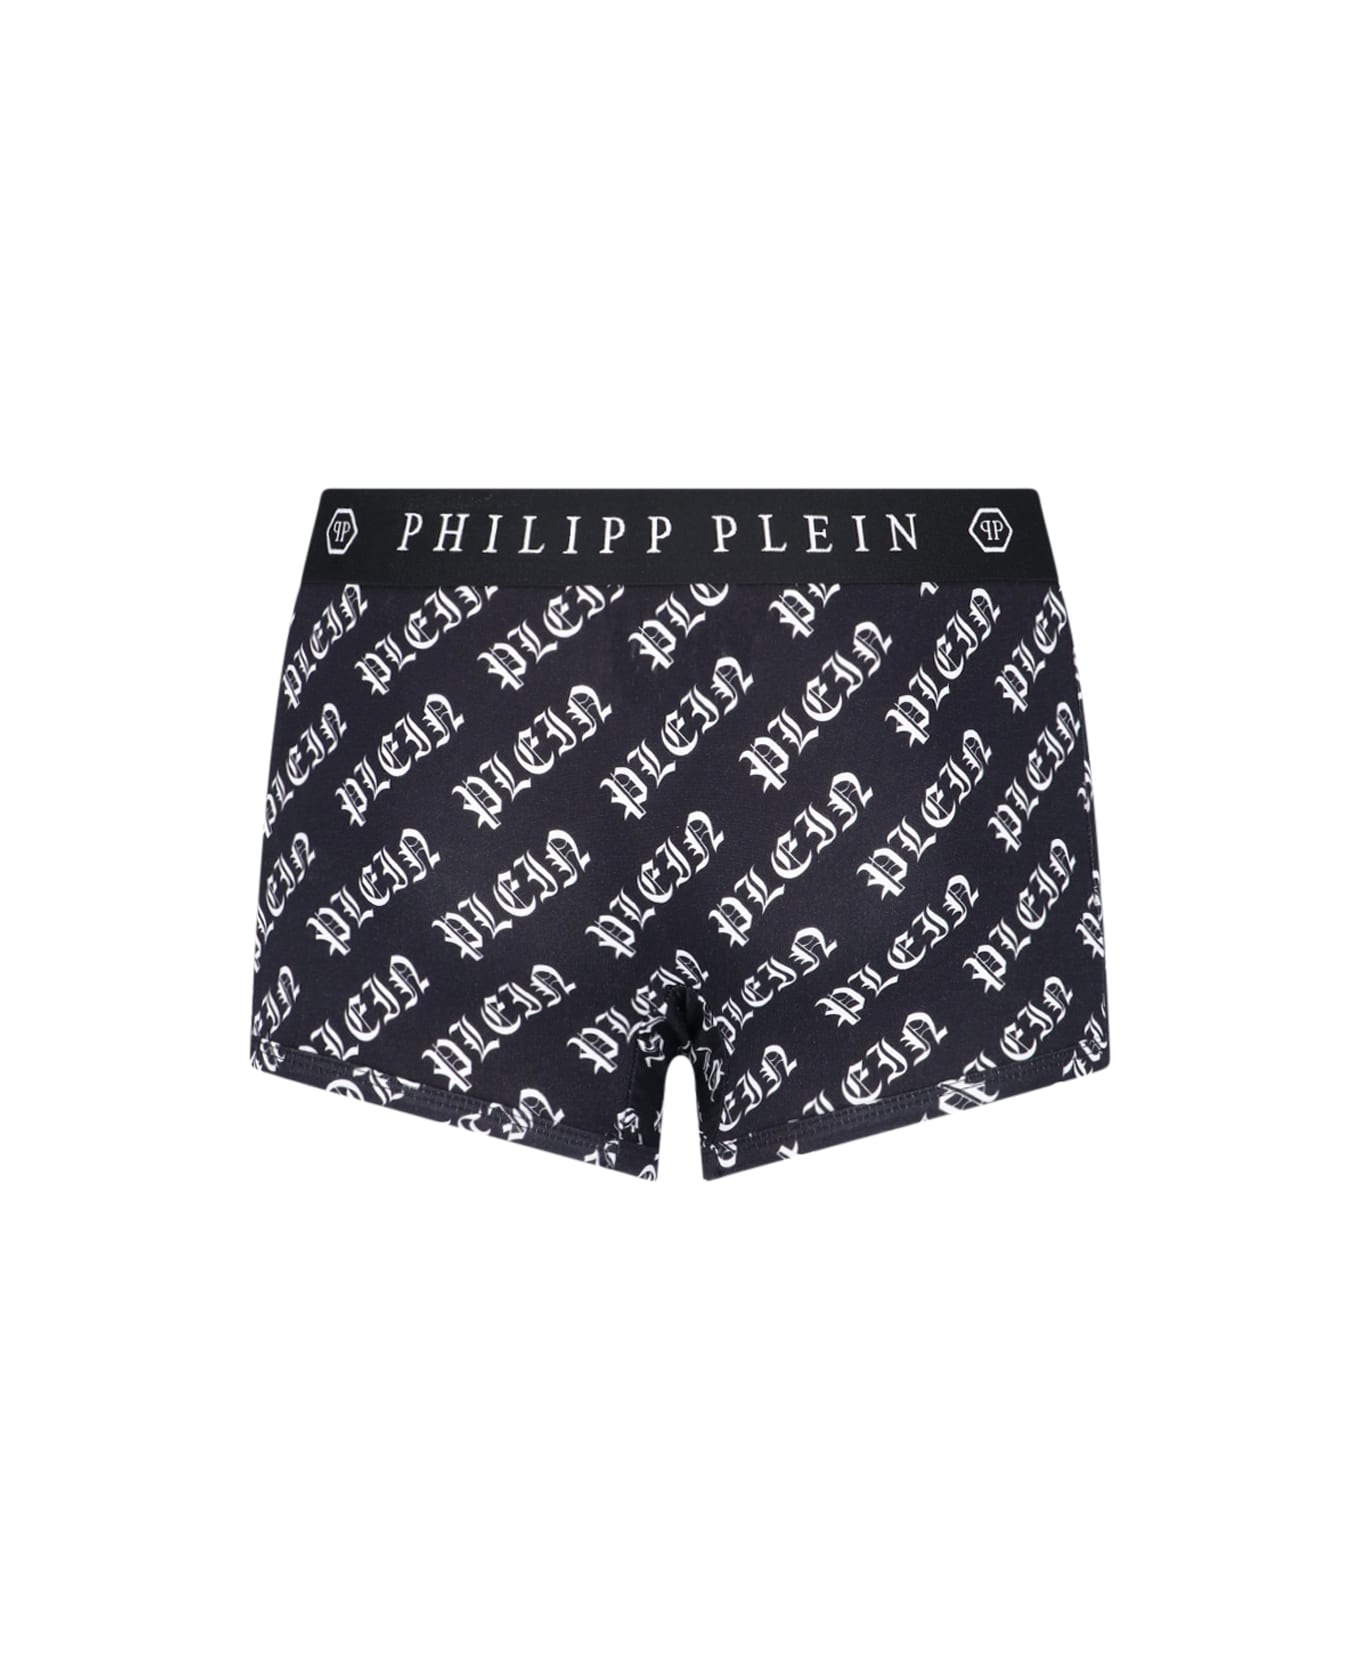 Philipp Plein Logo Boxer Shorts - Black  